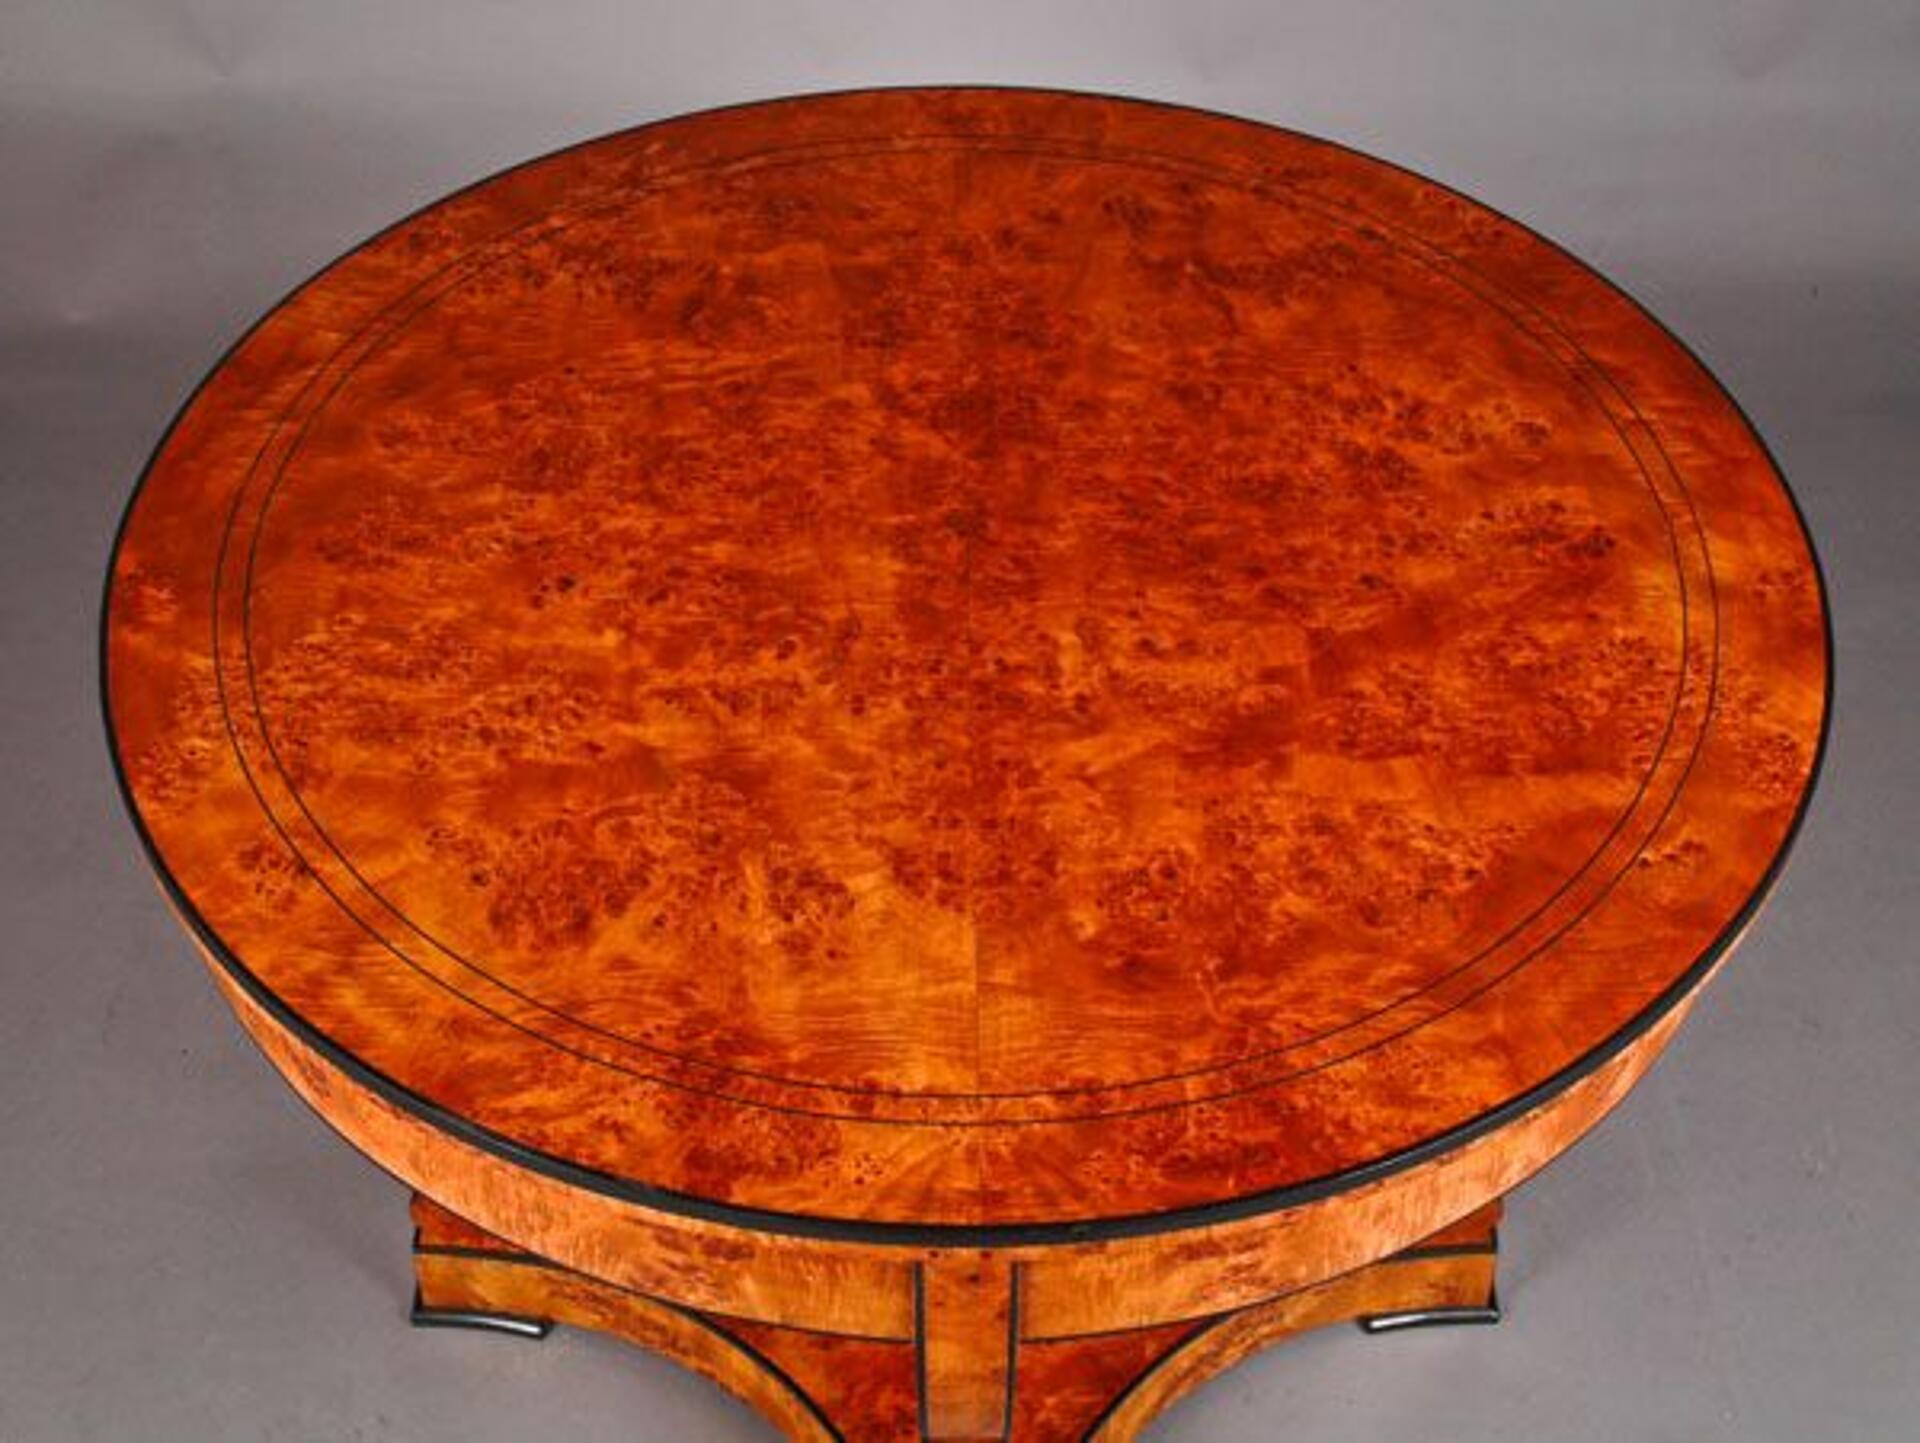 tavolo rotondo in stile Biedermeier intarsiato in essenza di radica di betulla e legno esotico di ebano prodotto su misura fatto a mano nel laboratorio di alta ebanisteria